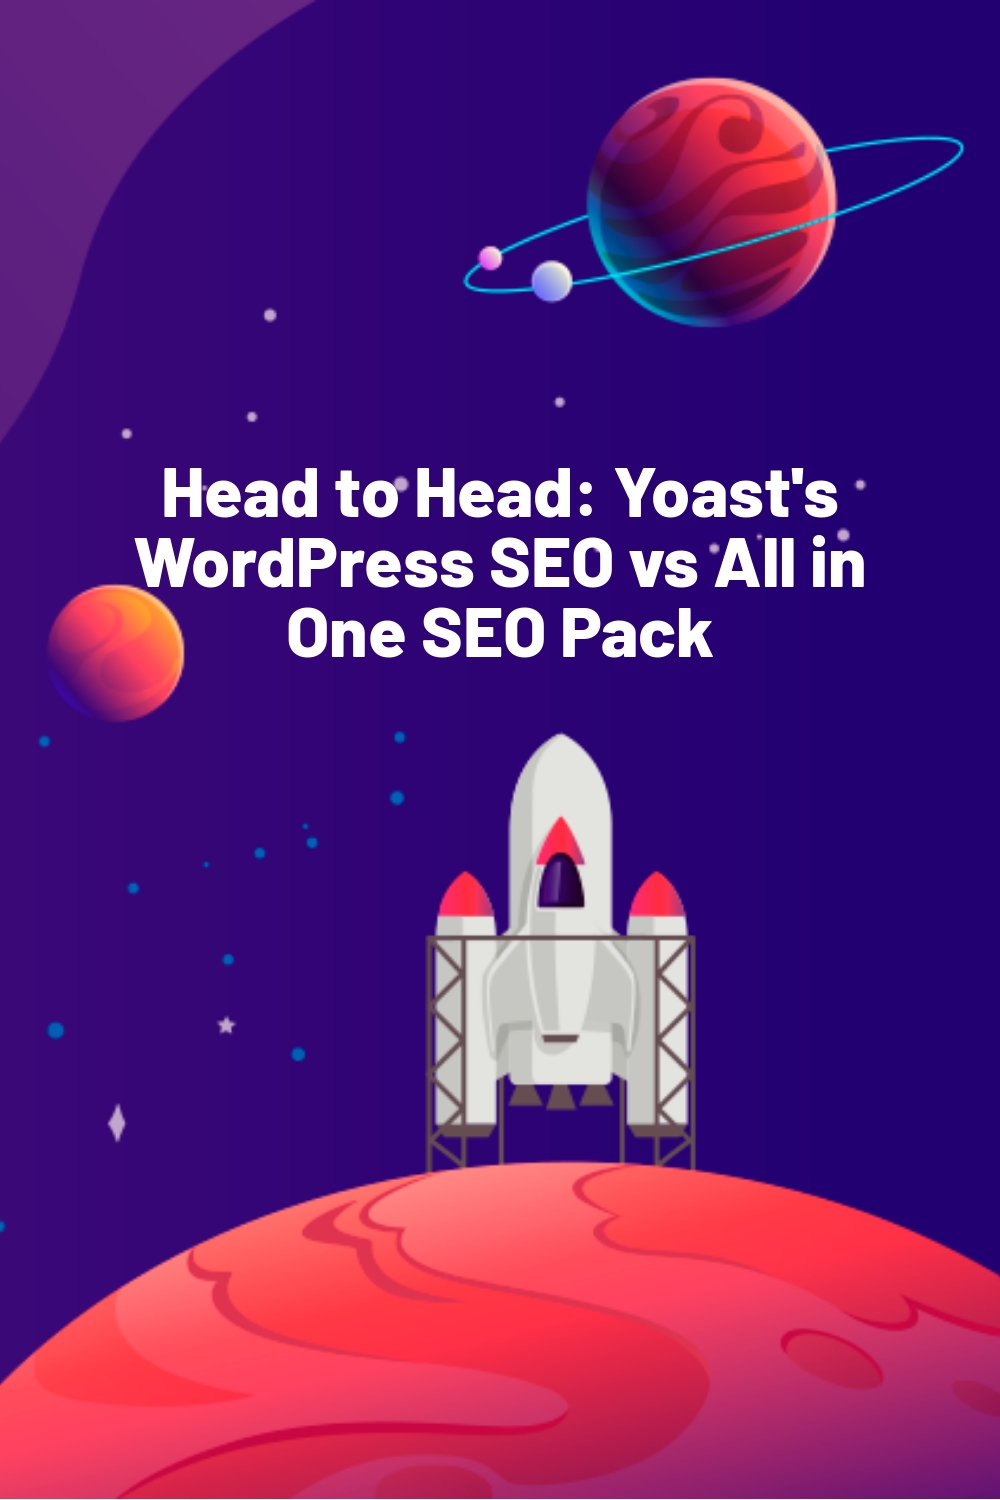 Head to Head: Yoast’s WordPress SEO vs All in One SEO Pack